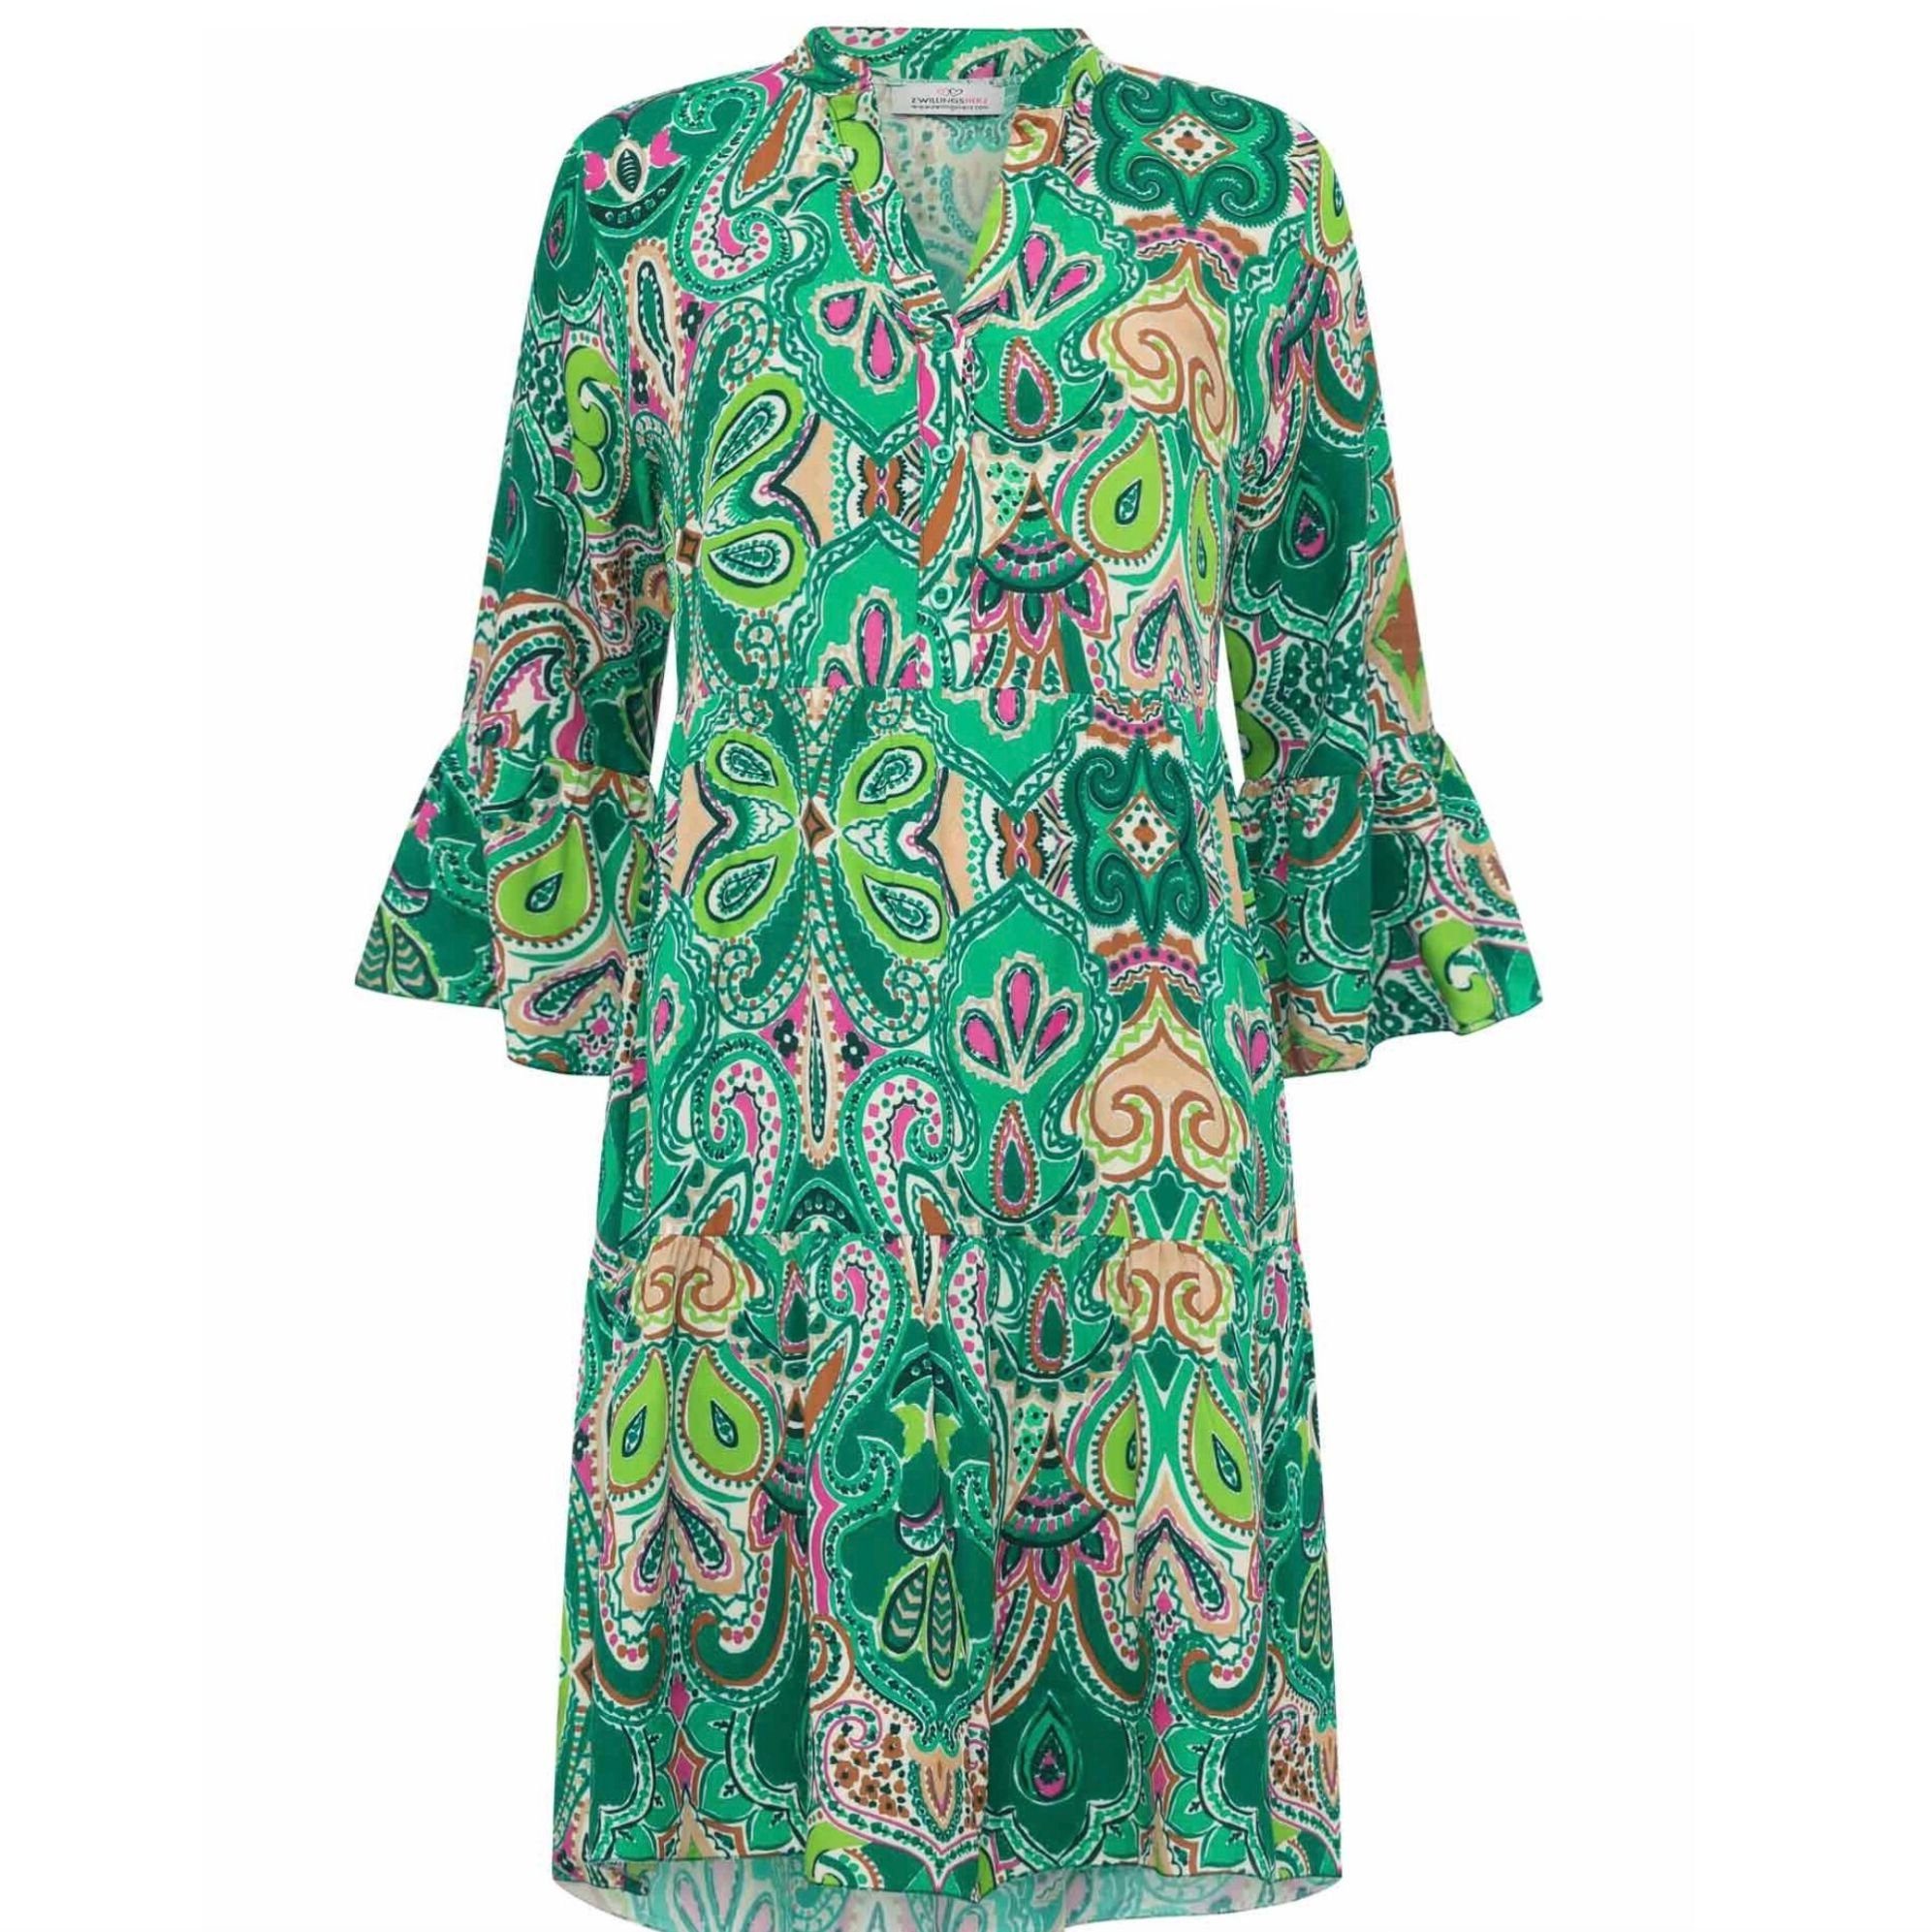 Zwillingsherz Sommerkleid Kleid Wild Paisley in grün pink oder